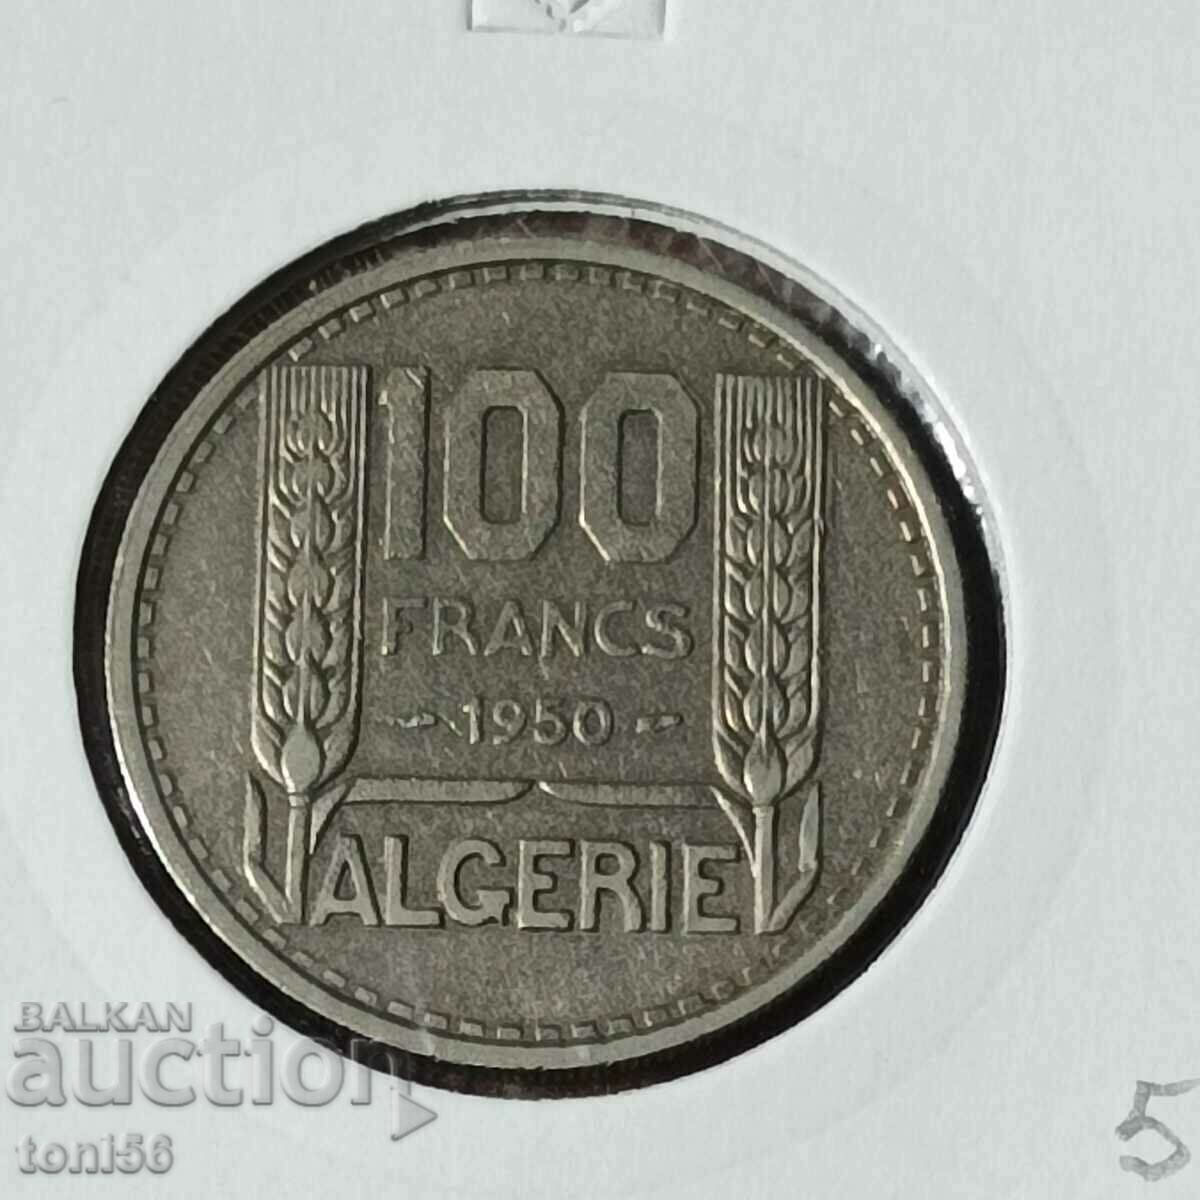 Algeria 100 francs 1950